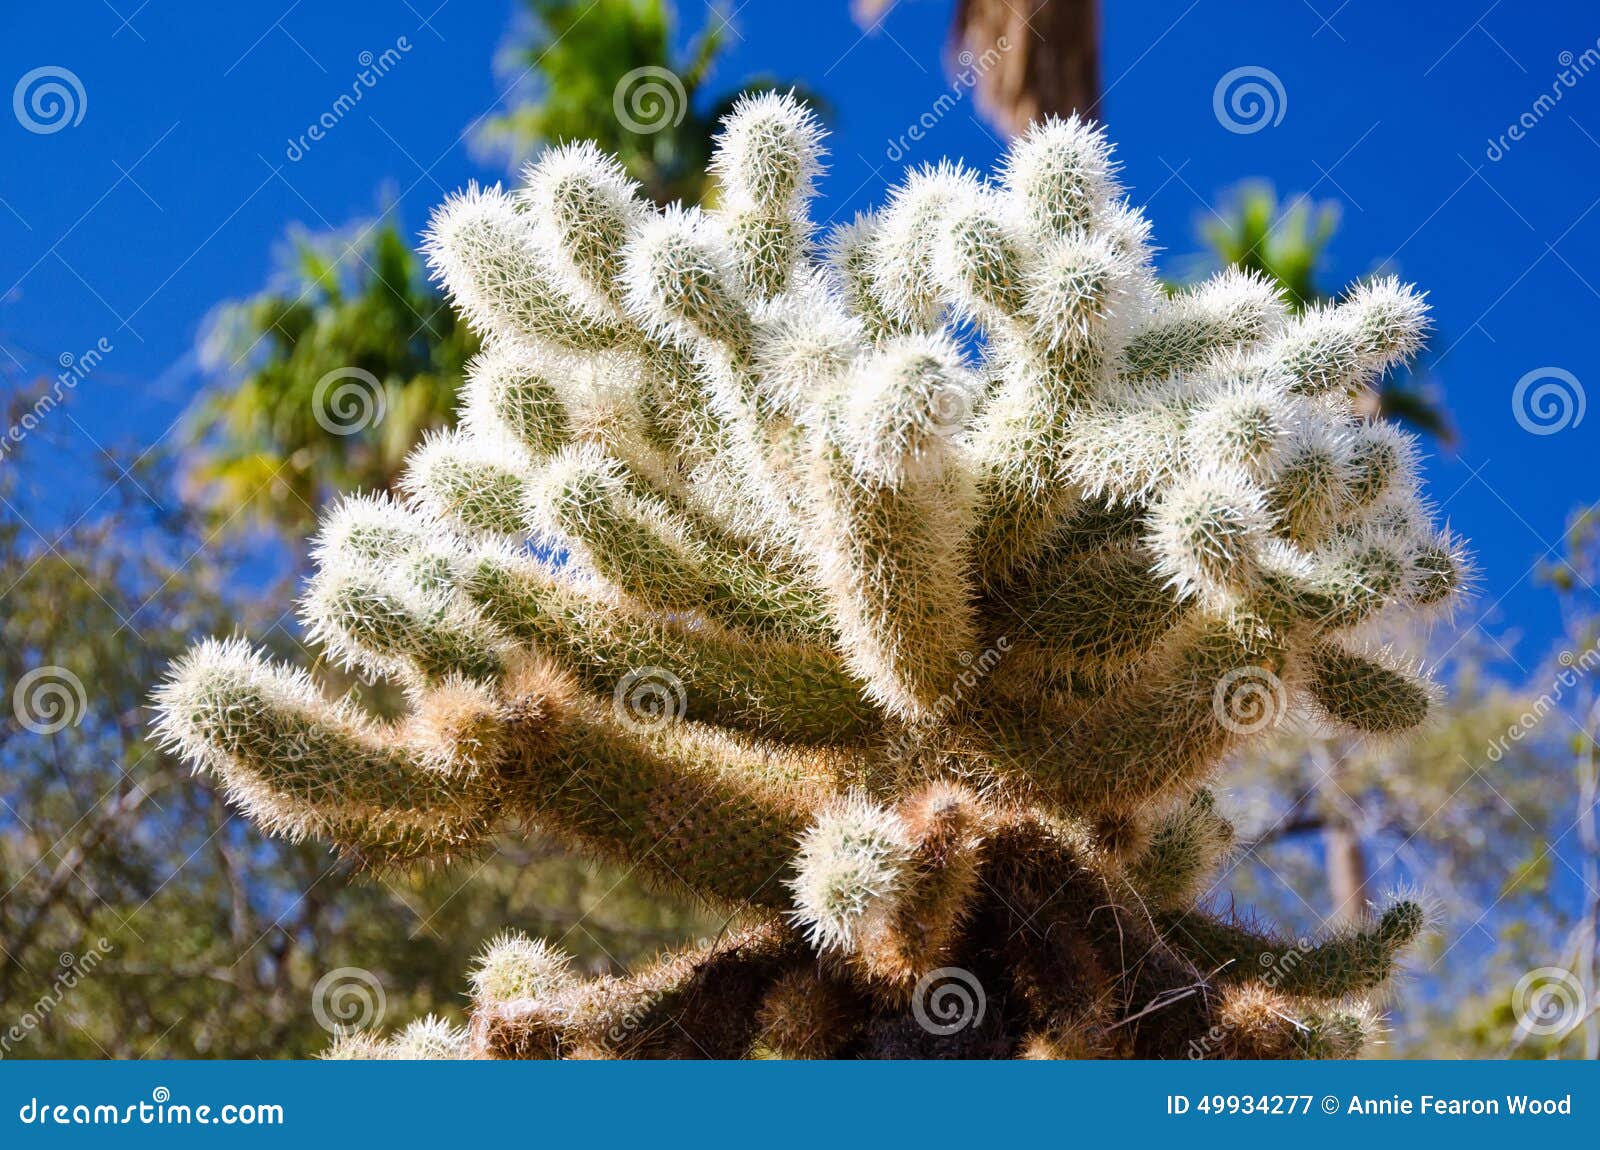 close up of a cholla cactus